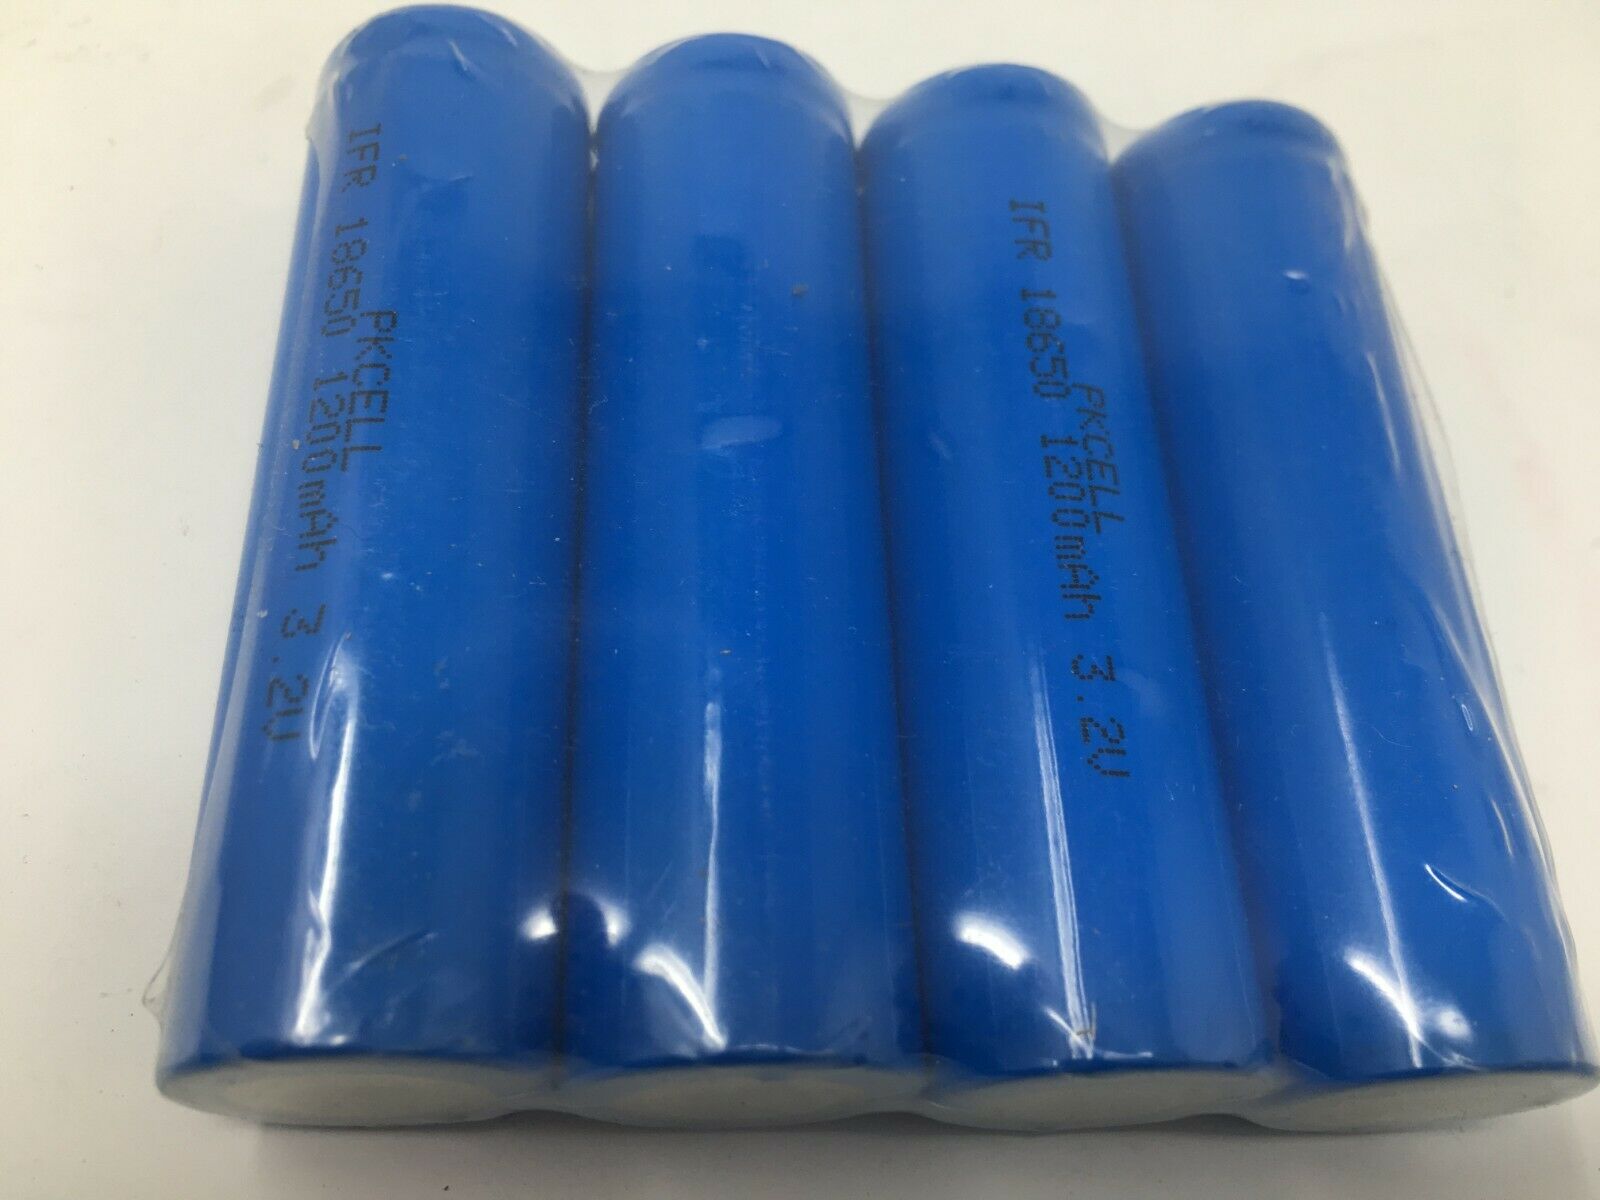 4 x Lithium Ionen Akku 1200 mAh / 3,7 V / 18650 Li - ion 65 mm lang blau